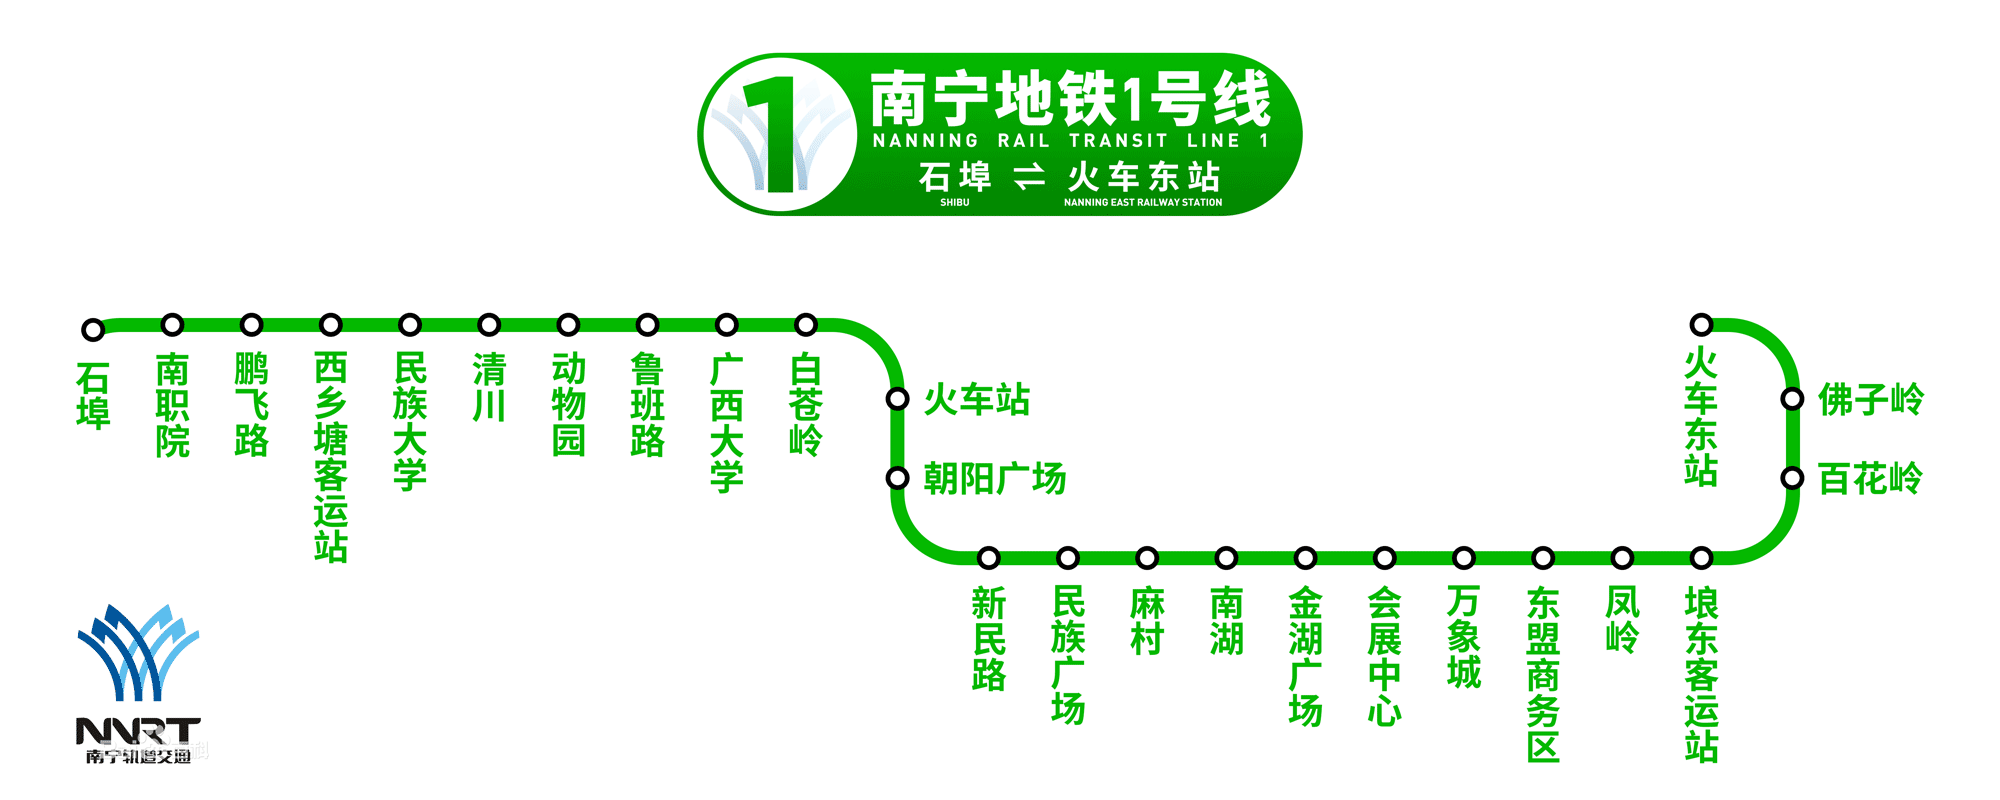 2021年南宁地铁线路图高清版 南宁地铁图2021最新版